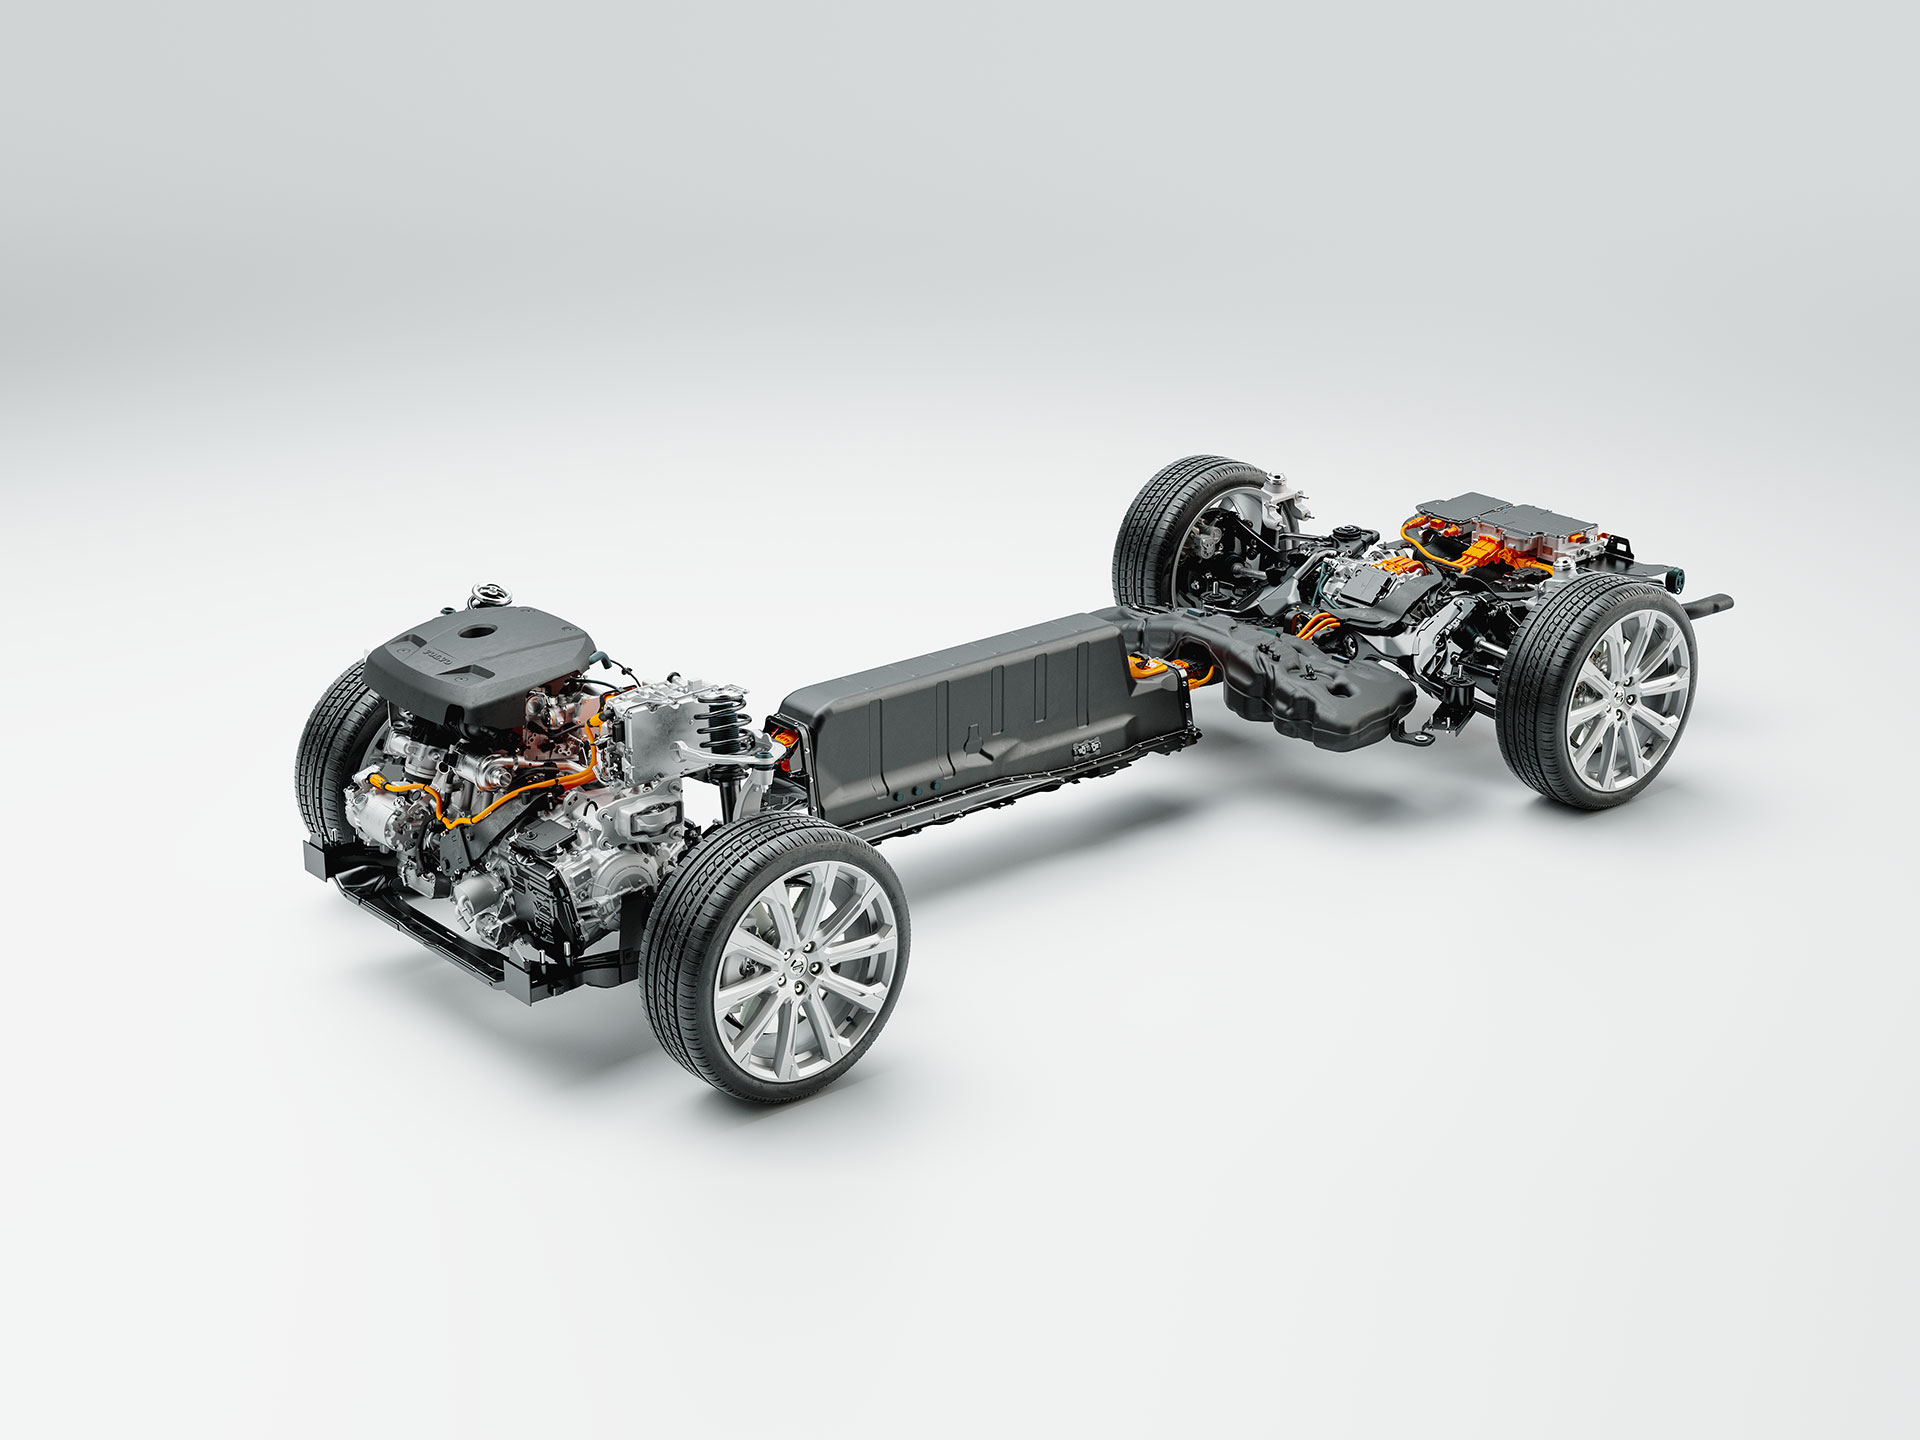 Dettagli tecnici di telaio, batteria e trasmissione di una Volvo plug-in hybrid.